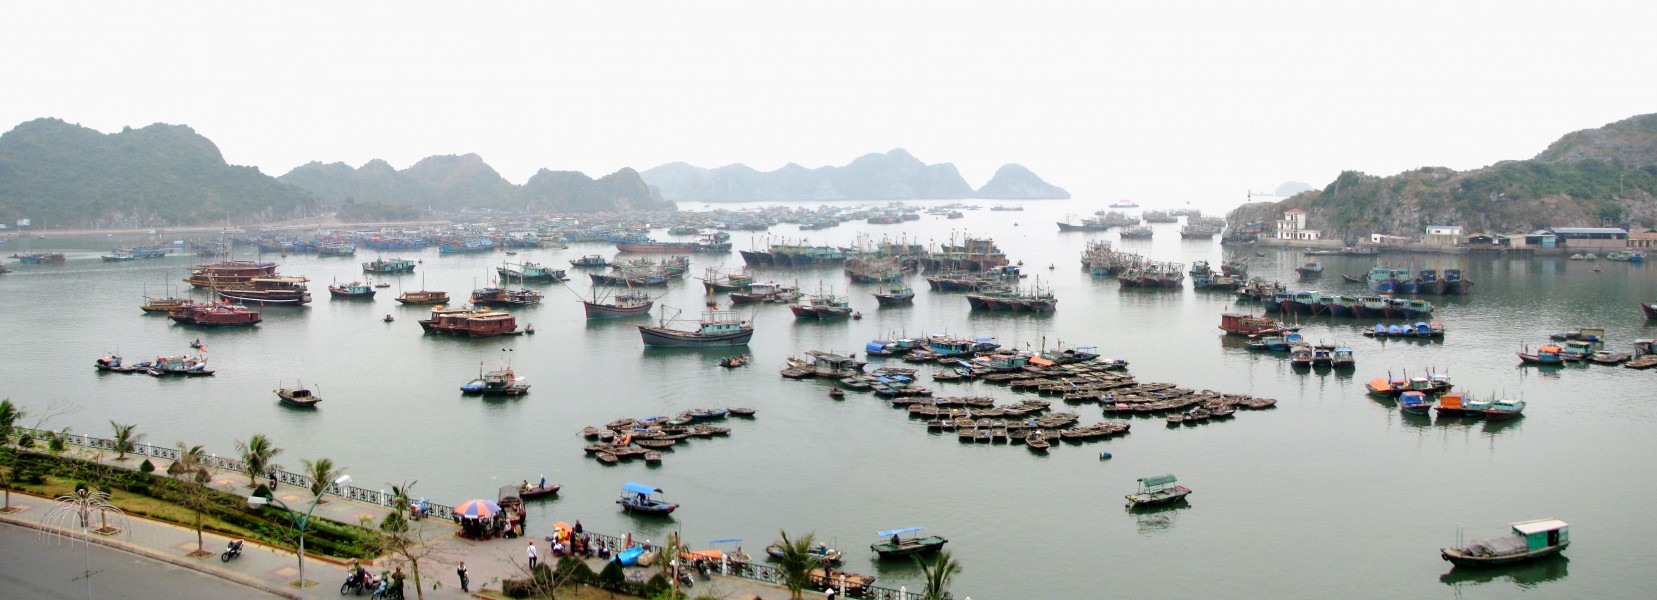 Vietnam 08 - 34 - Cat Ba harbour (3170057241)